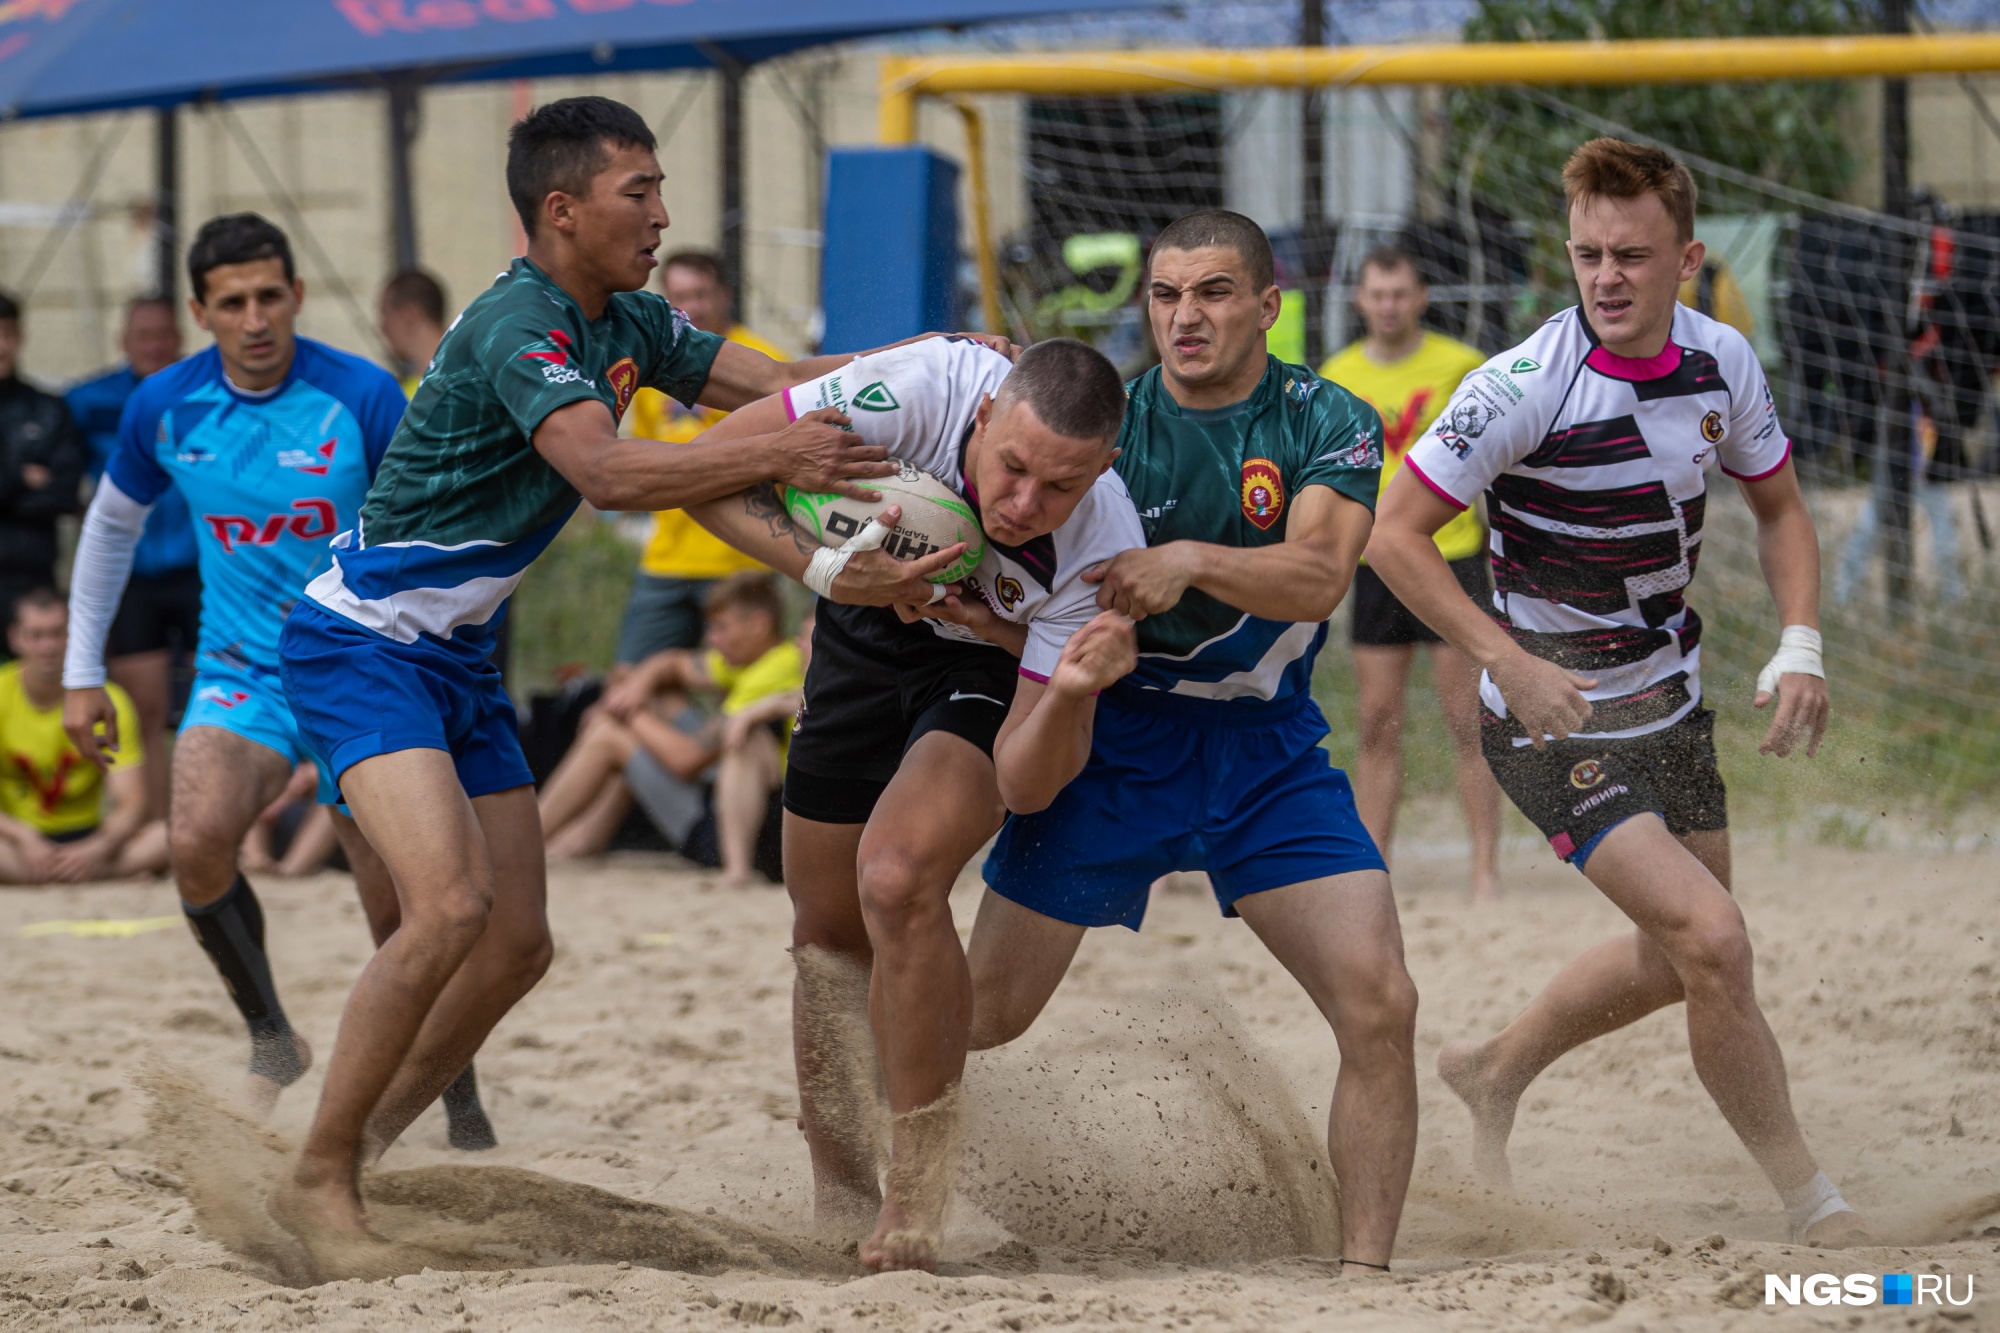 В Новосибирске прошли соревнования по пляжному регби — посмотрите на красавцев в песке